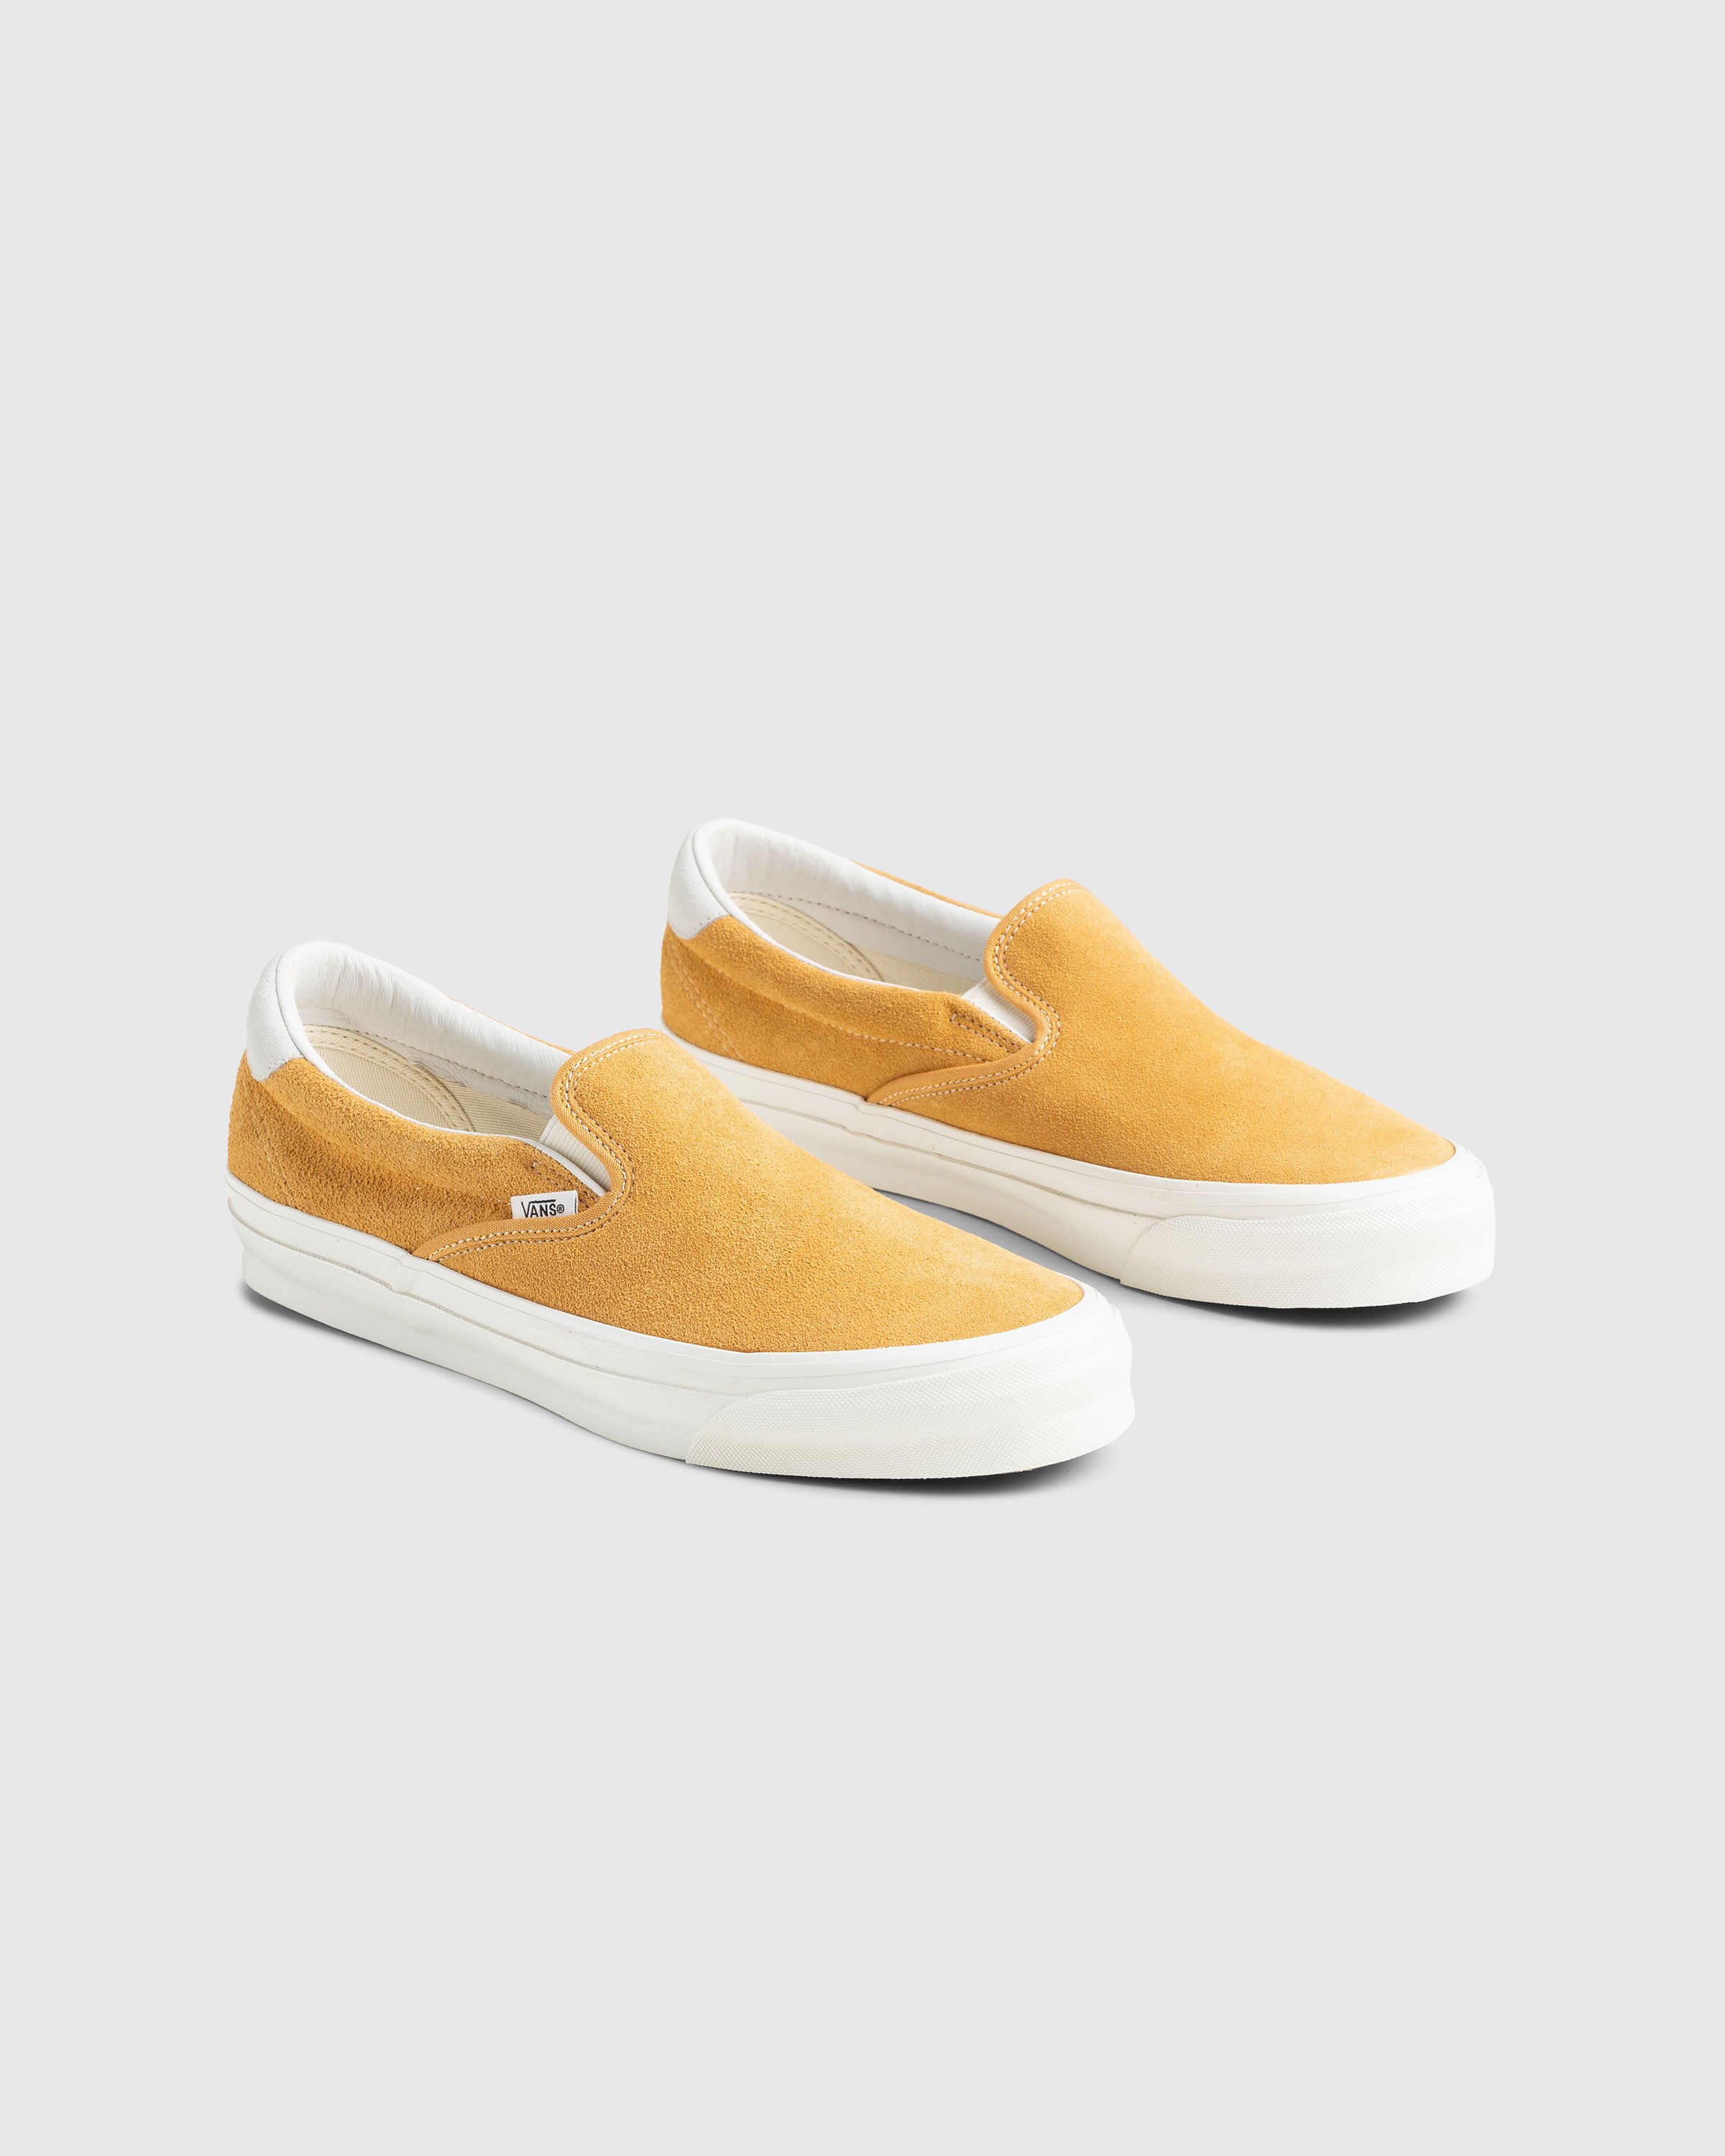 Vans - OG Slip-On 59 LX Suede Yellow - Footwear - Yellow - Image 3